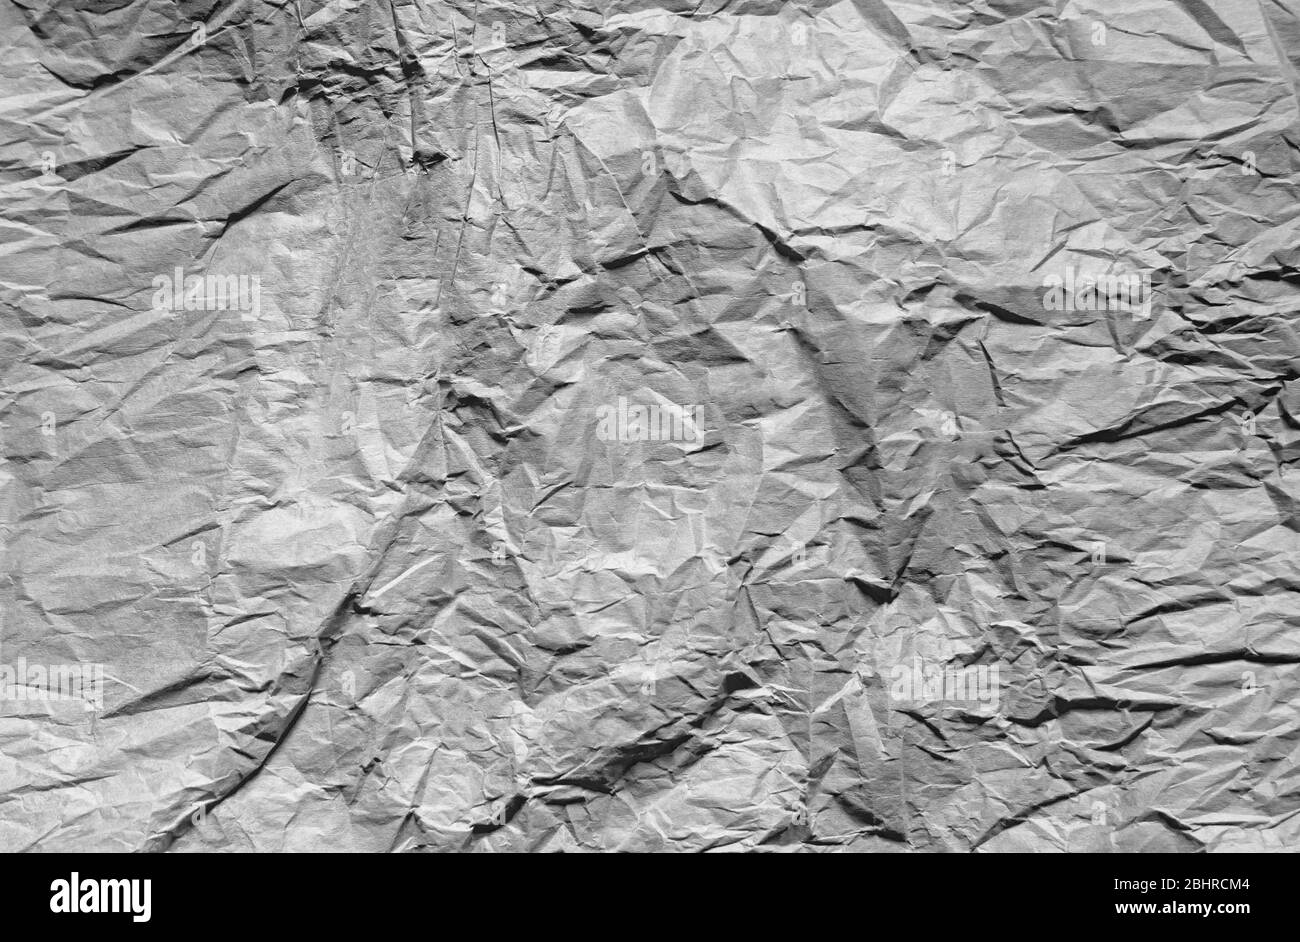 Abstrakte Textur aus zerknittert Papier, kontrastreiche schwarz-weiße Pappe  Hintergrund Stockfotografie - Alamy